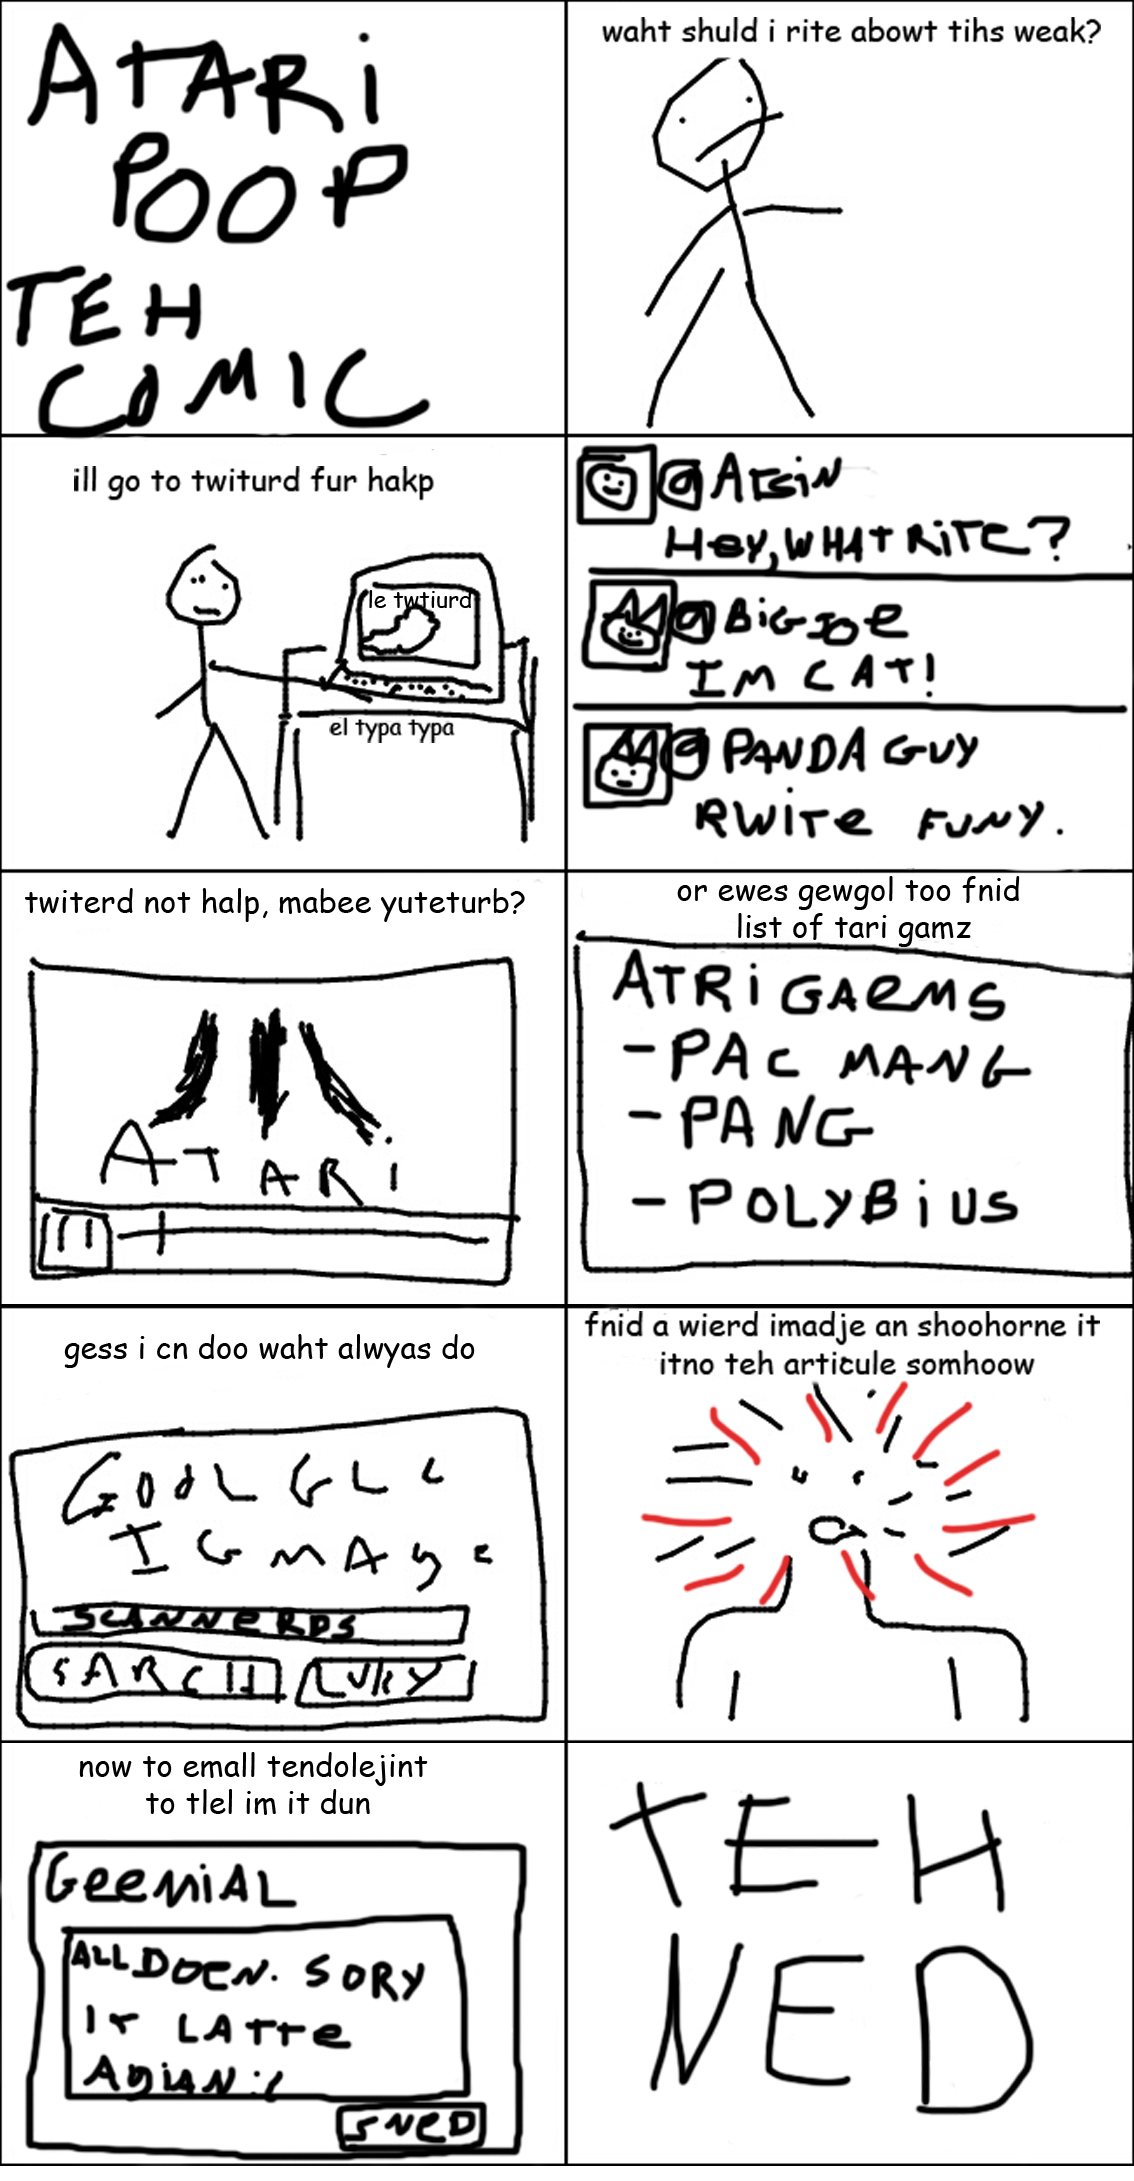 Atari Poop - The Comic #1